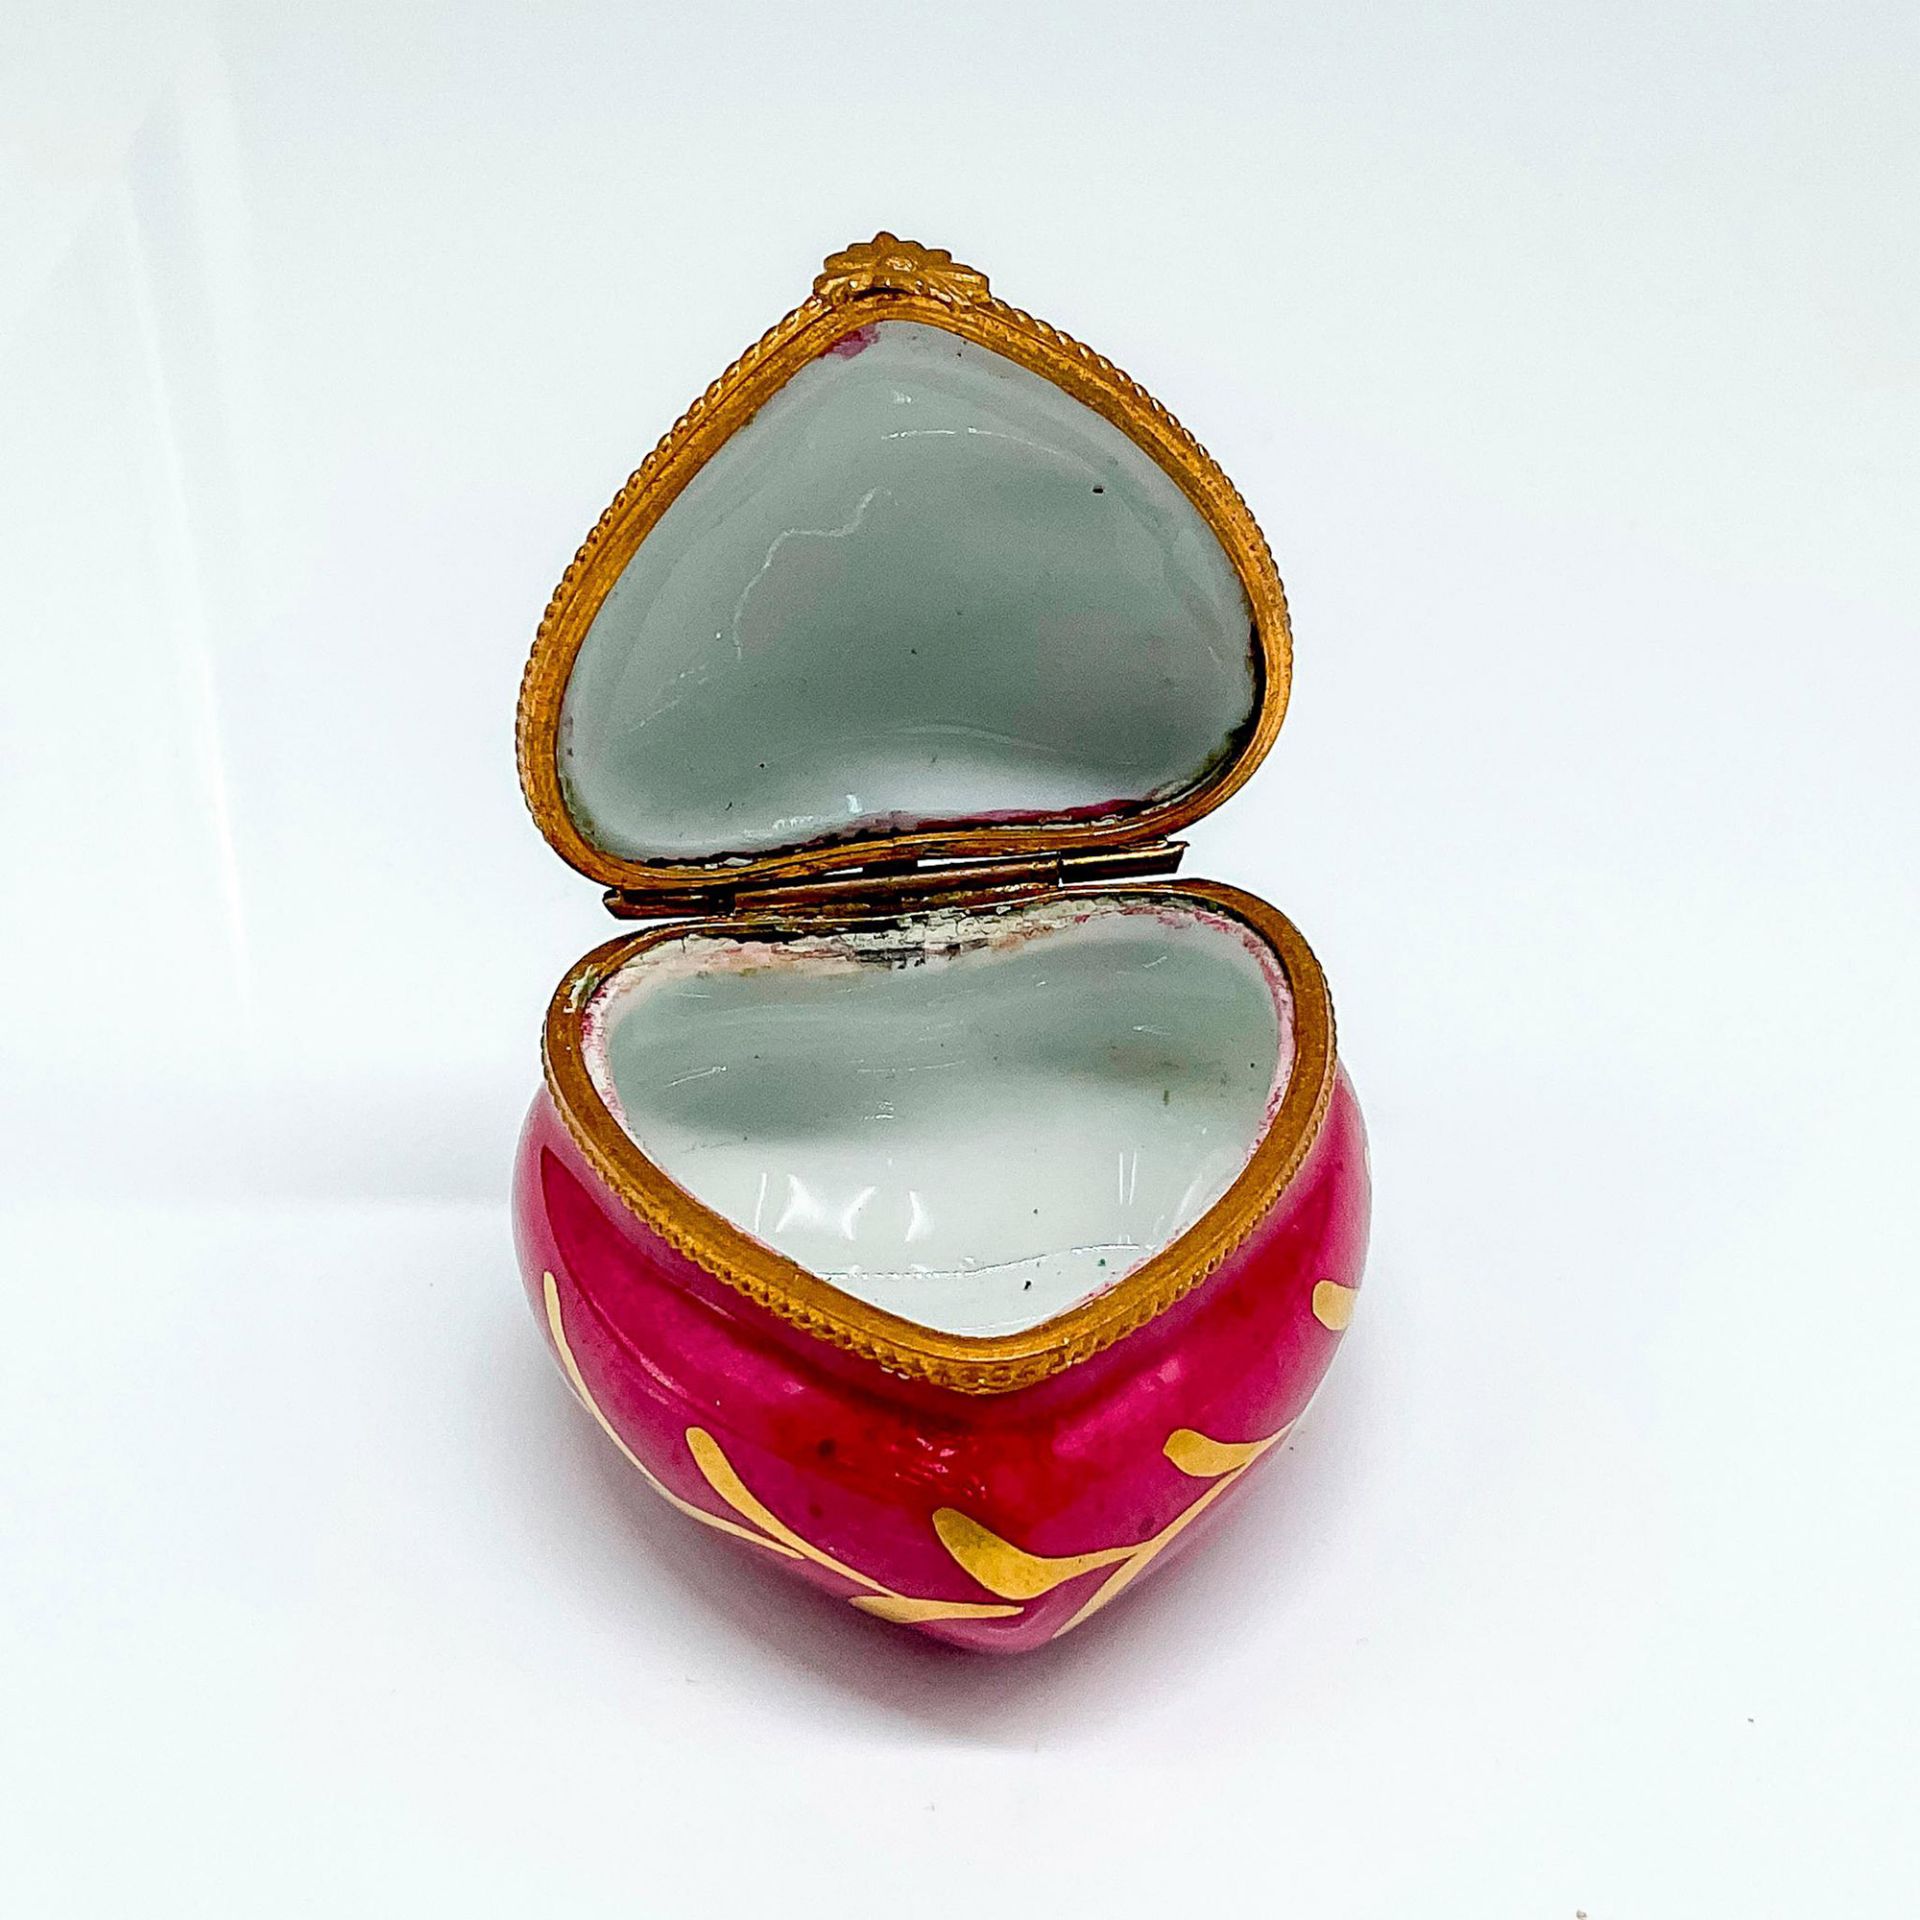 Limoges Porcelain Heart Trinket Box - Image 2 of 4